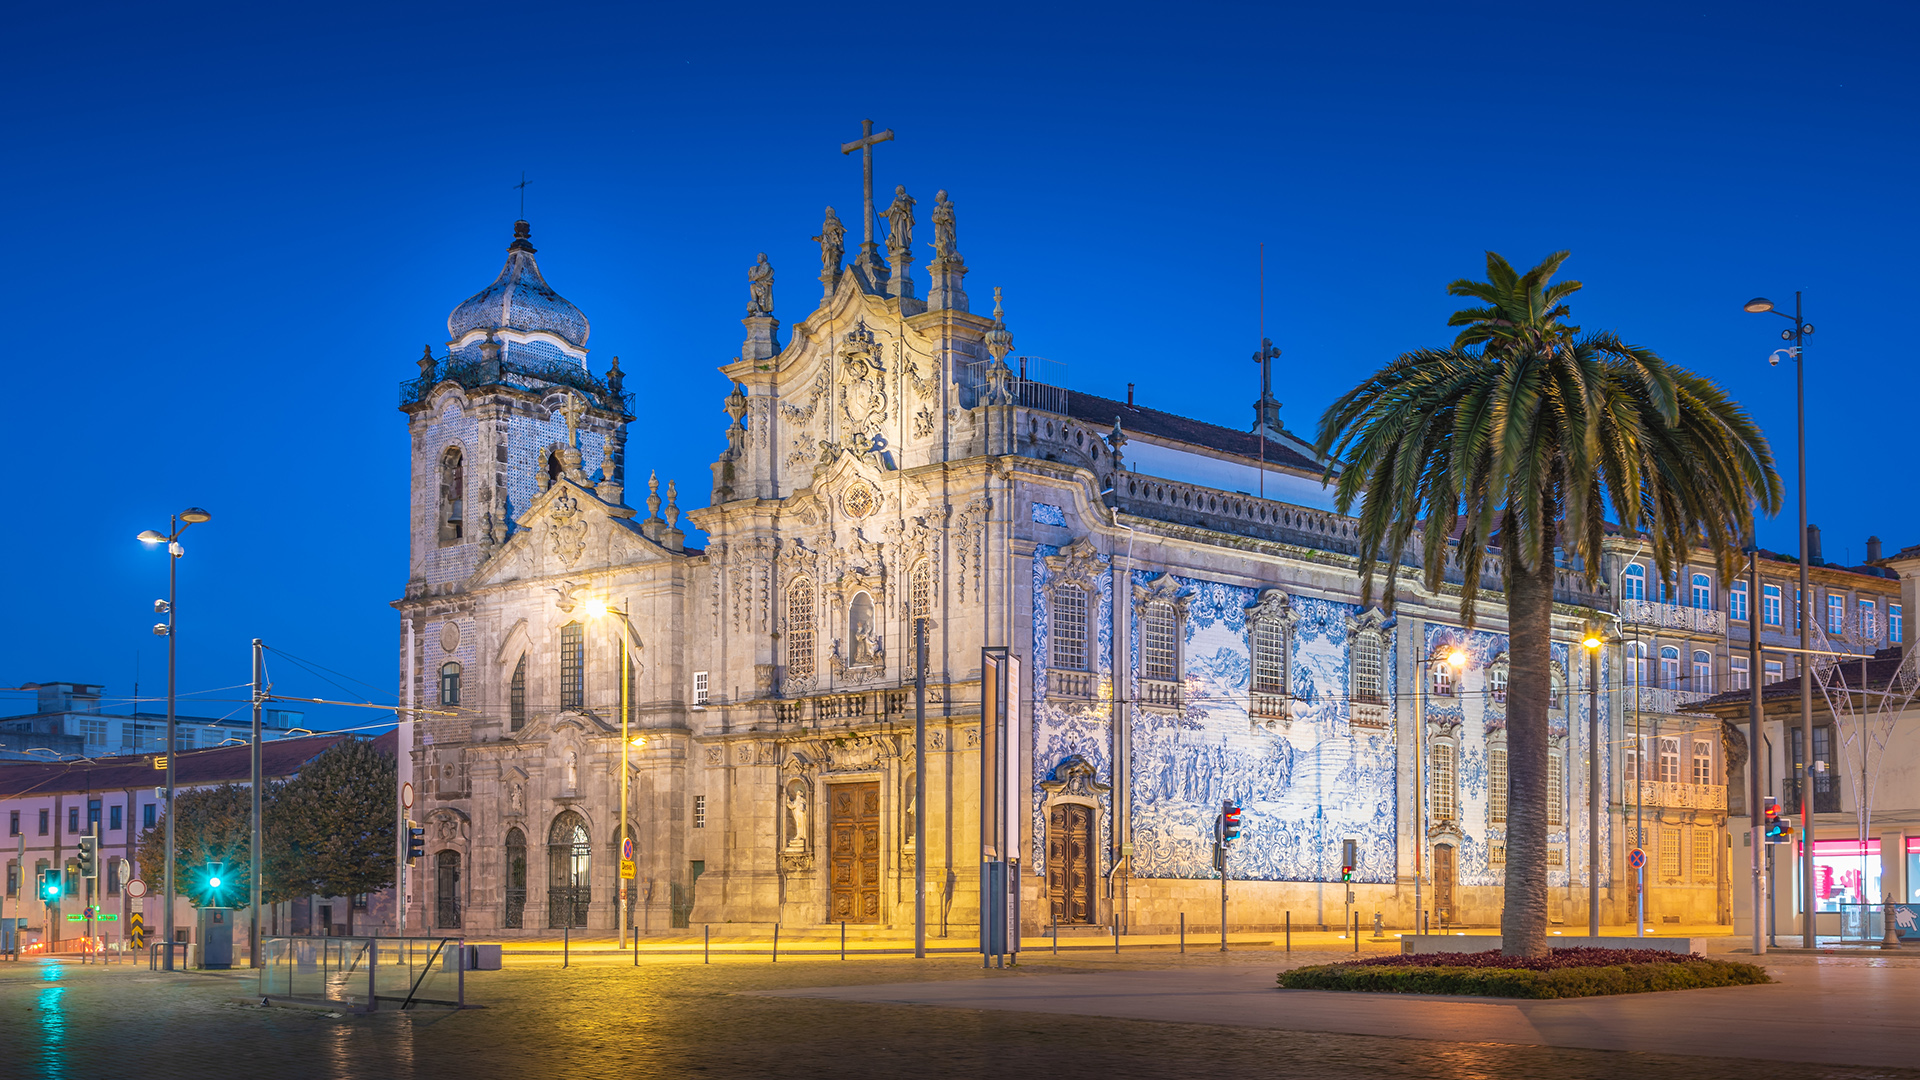 Porto Travel Guide: Carmo and Carmelitas Churches 